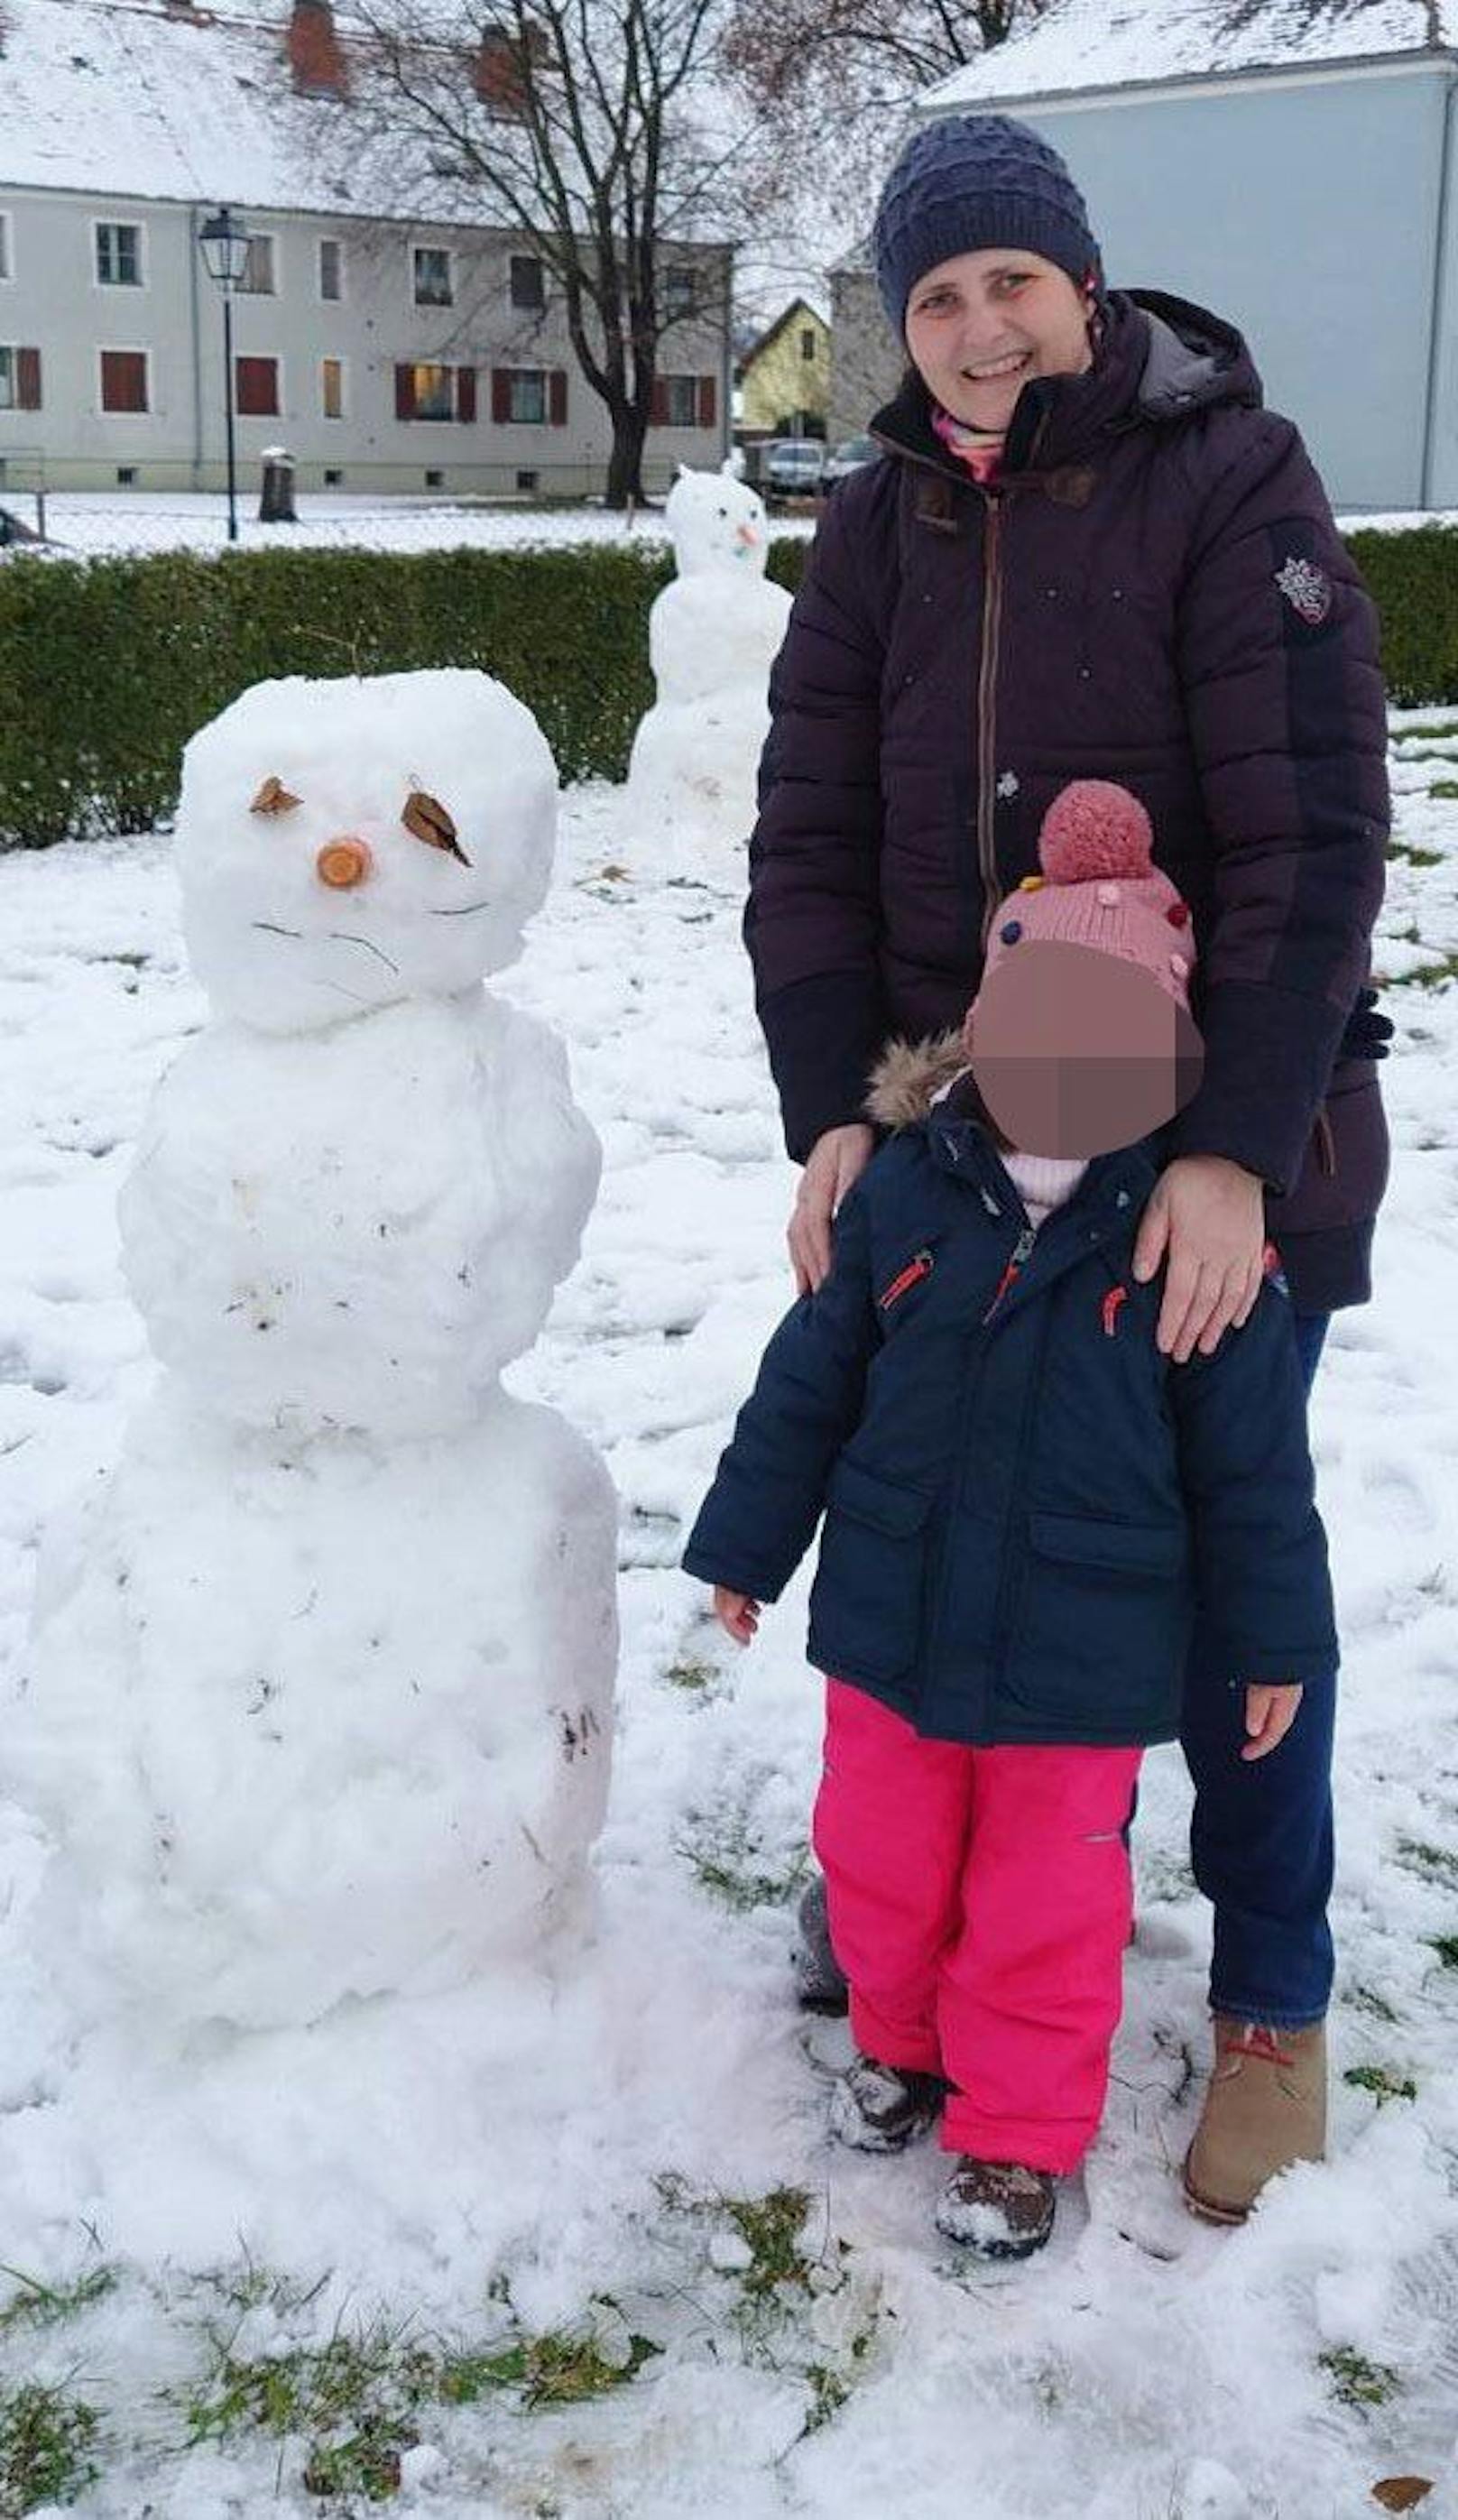 Mutter und Tochter beim Schneemann bauen.